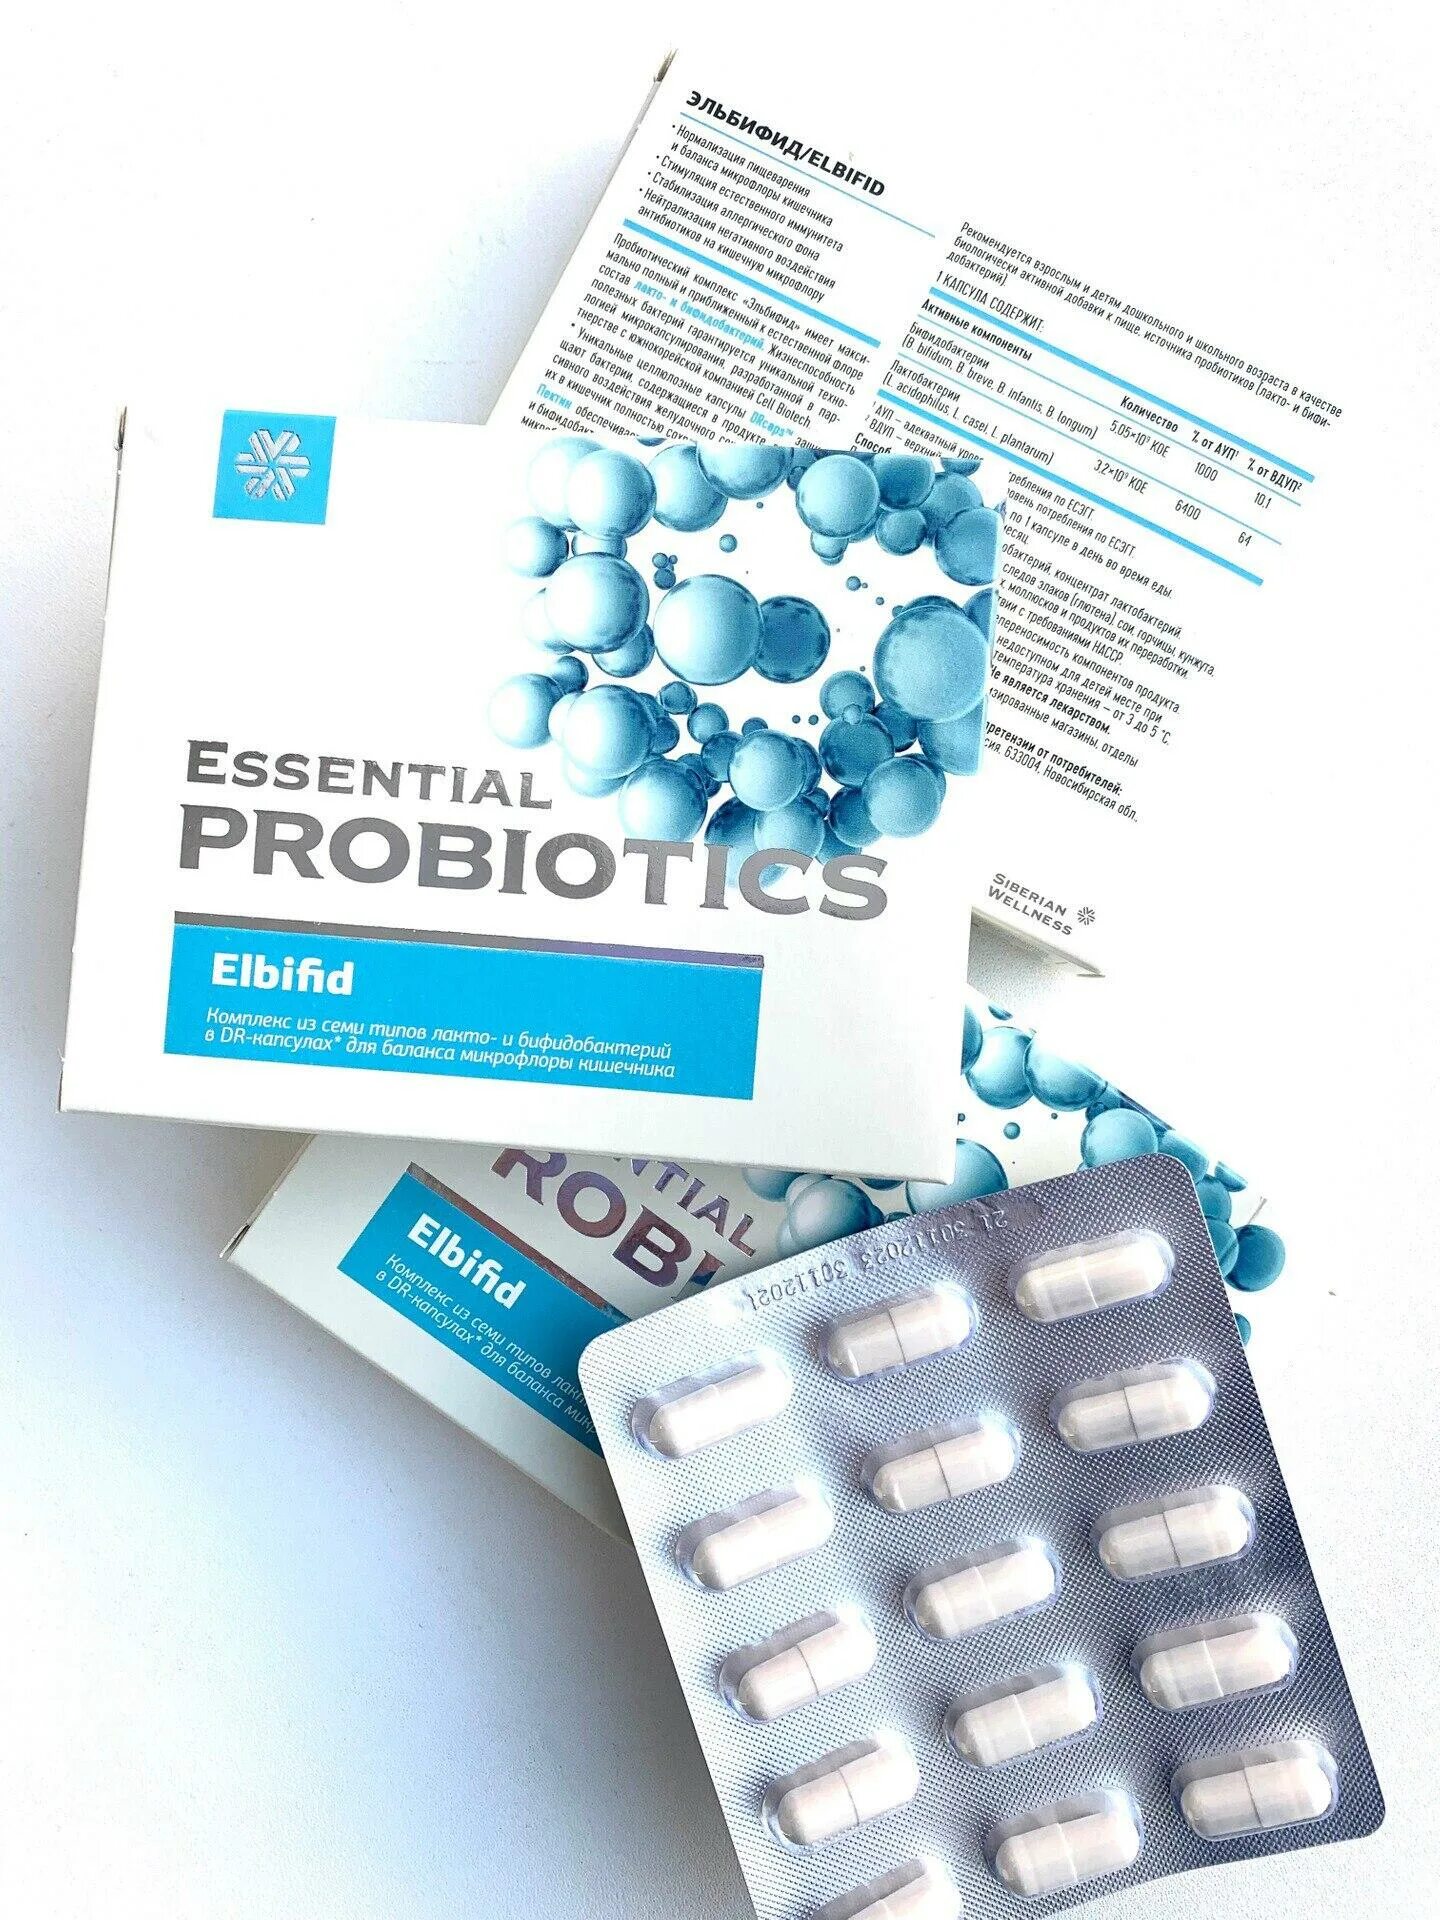 Эльбифид сибирское здоровье инструкция по применению цена. Эльбифид - Essential probiotics. Эльбифид Сибирское здоровье. Сибирское здоровье пробиотики Эльбифид. Пробиотик Эльбифид отзывы.